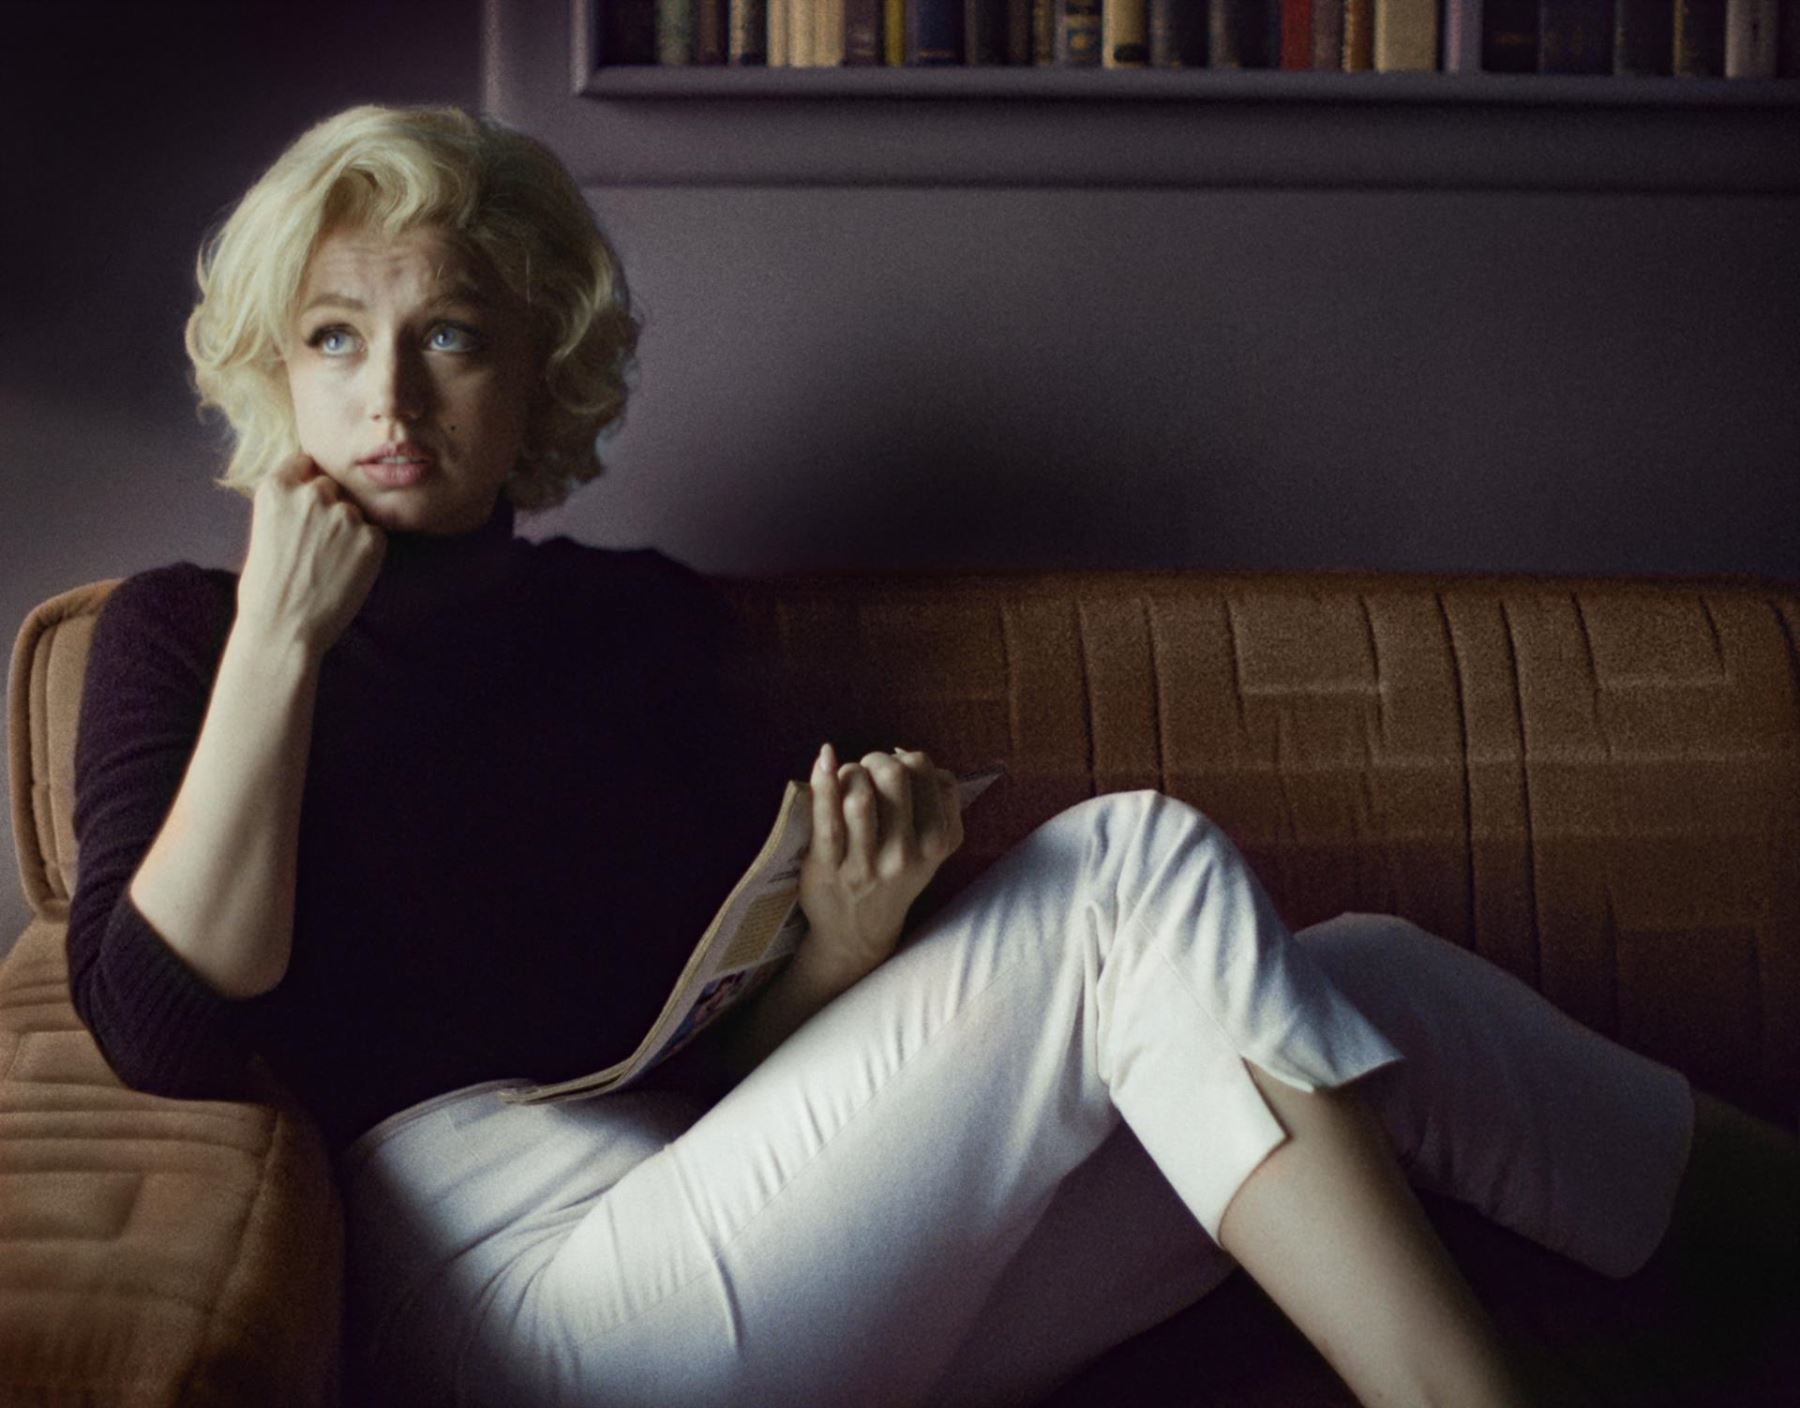 Filme sobre Marilyn con Ana de Armas llegará en septiembre a Netflix